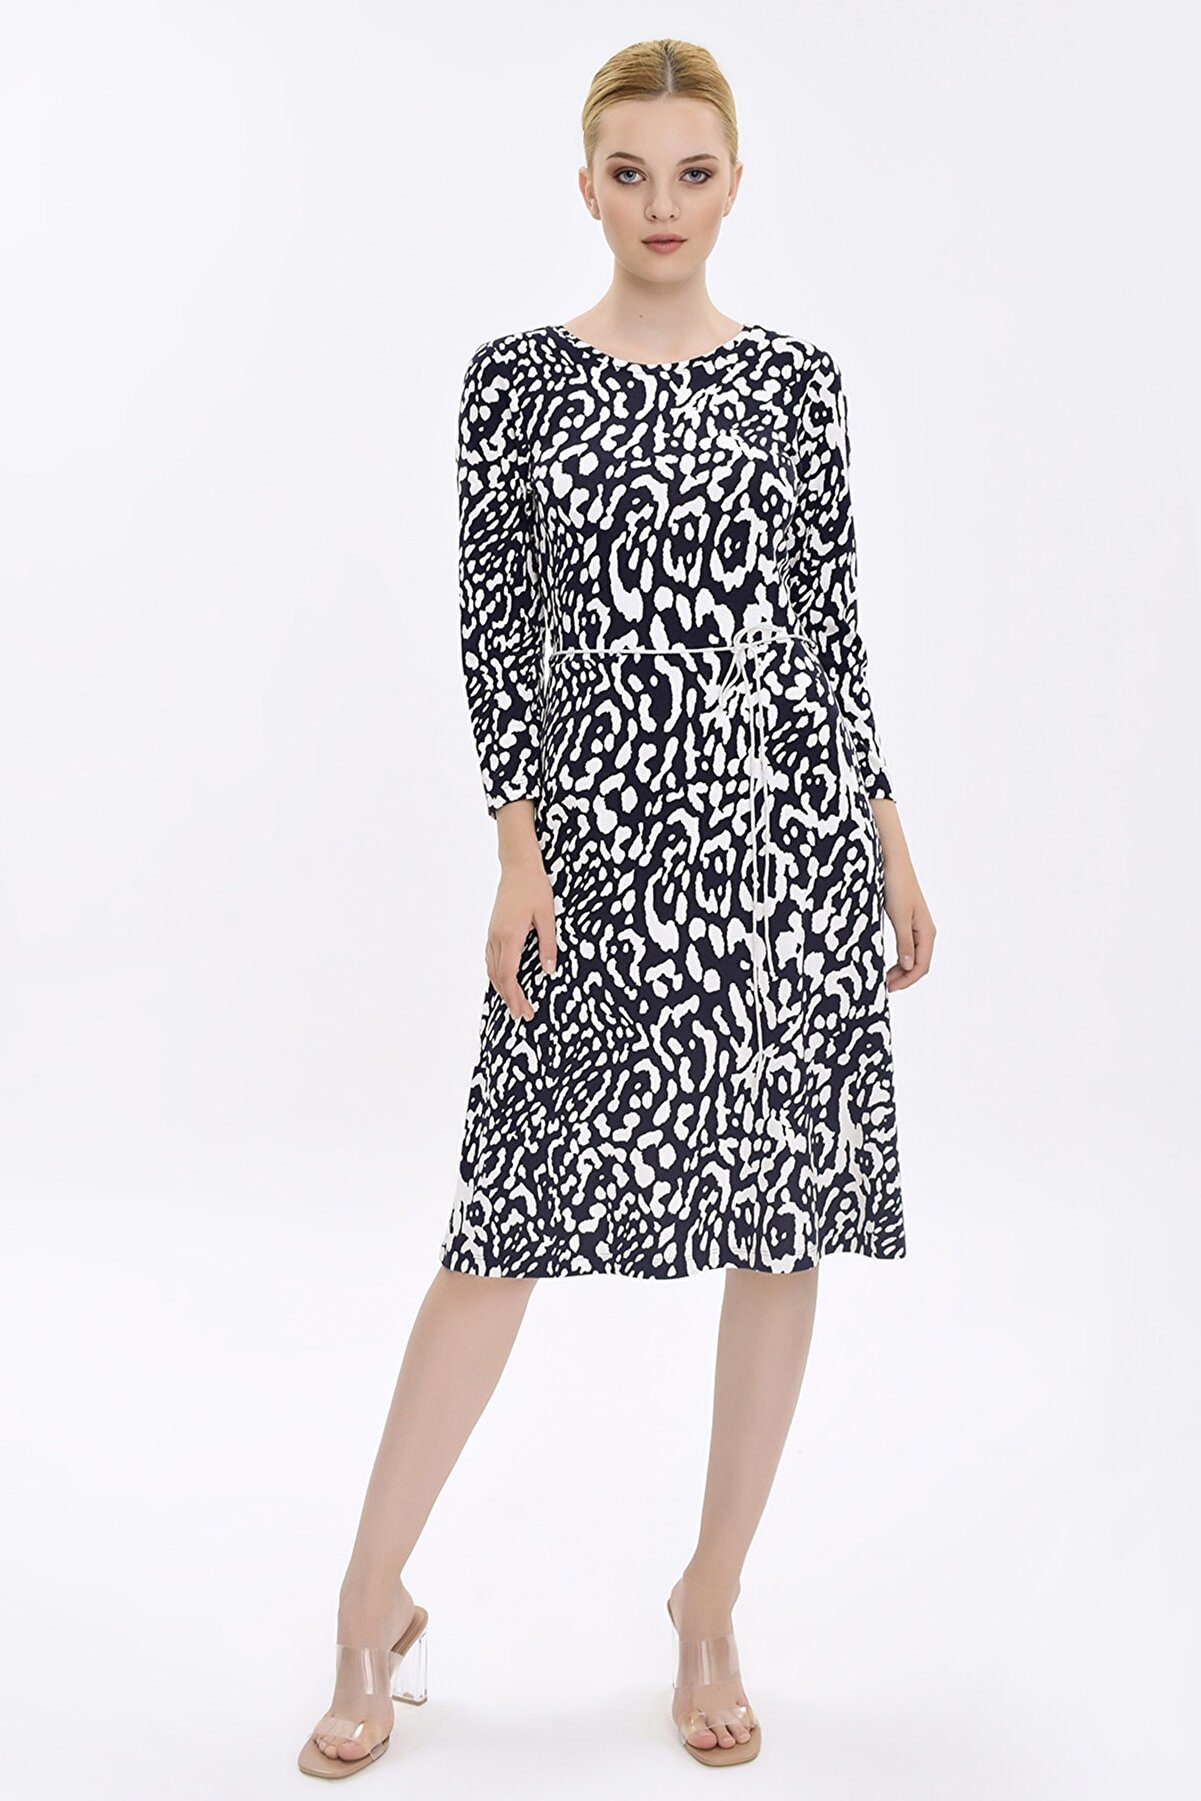 Hanna's Kadın Lacivert - Beyaz Zebra Desenli Kemerli Kloş Elbise